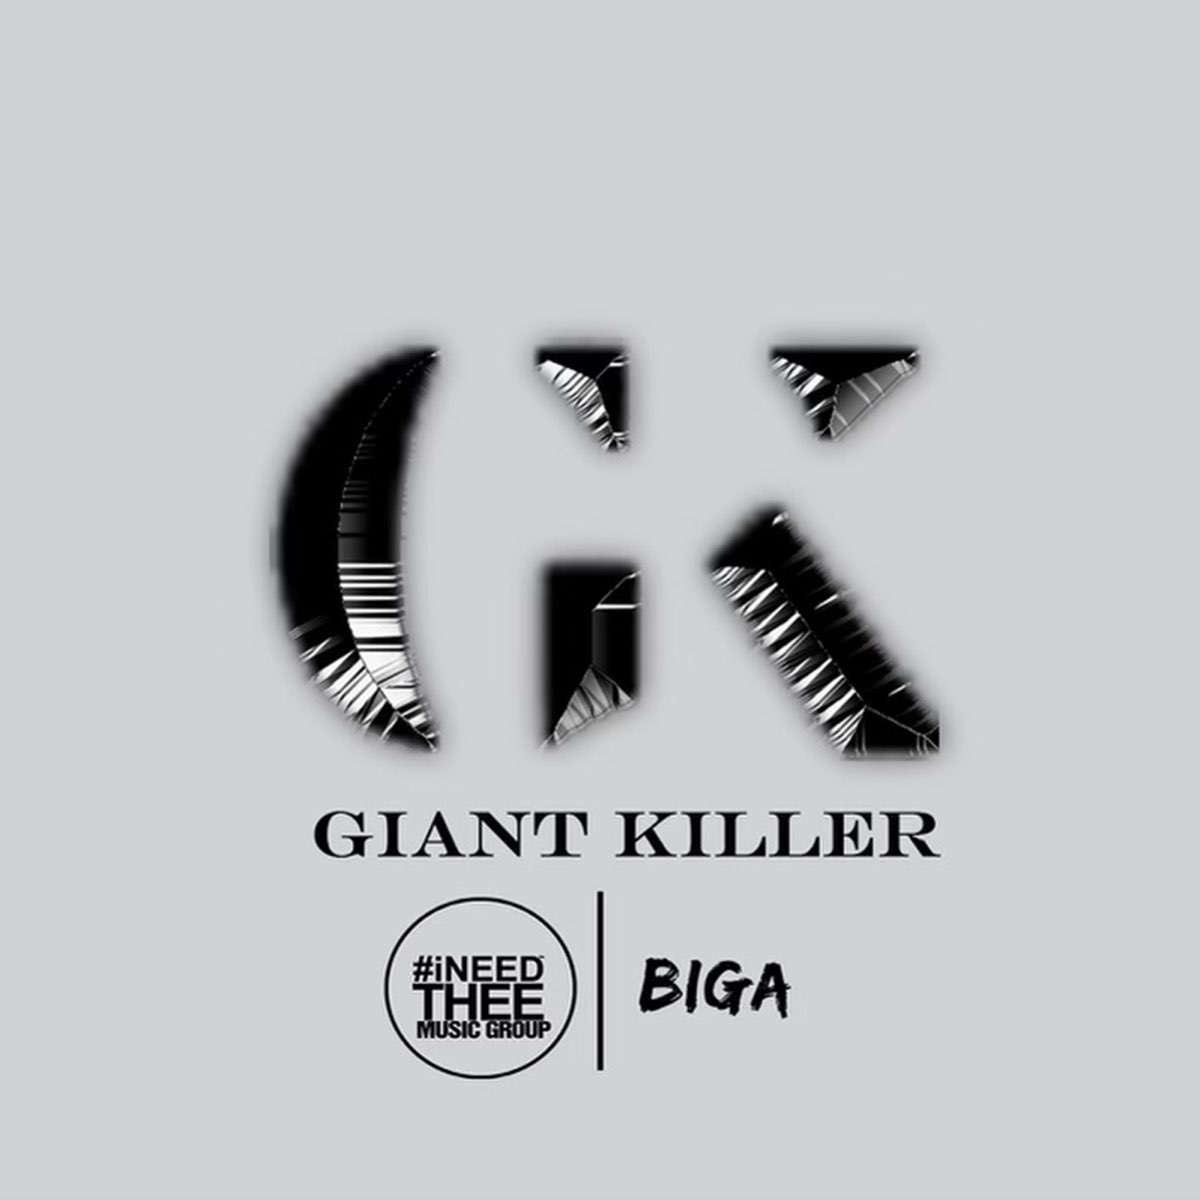 Giant killer